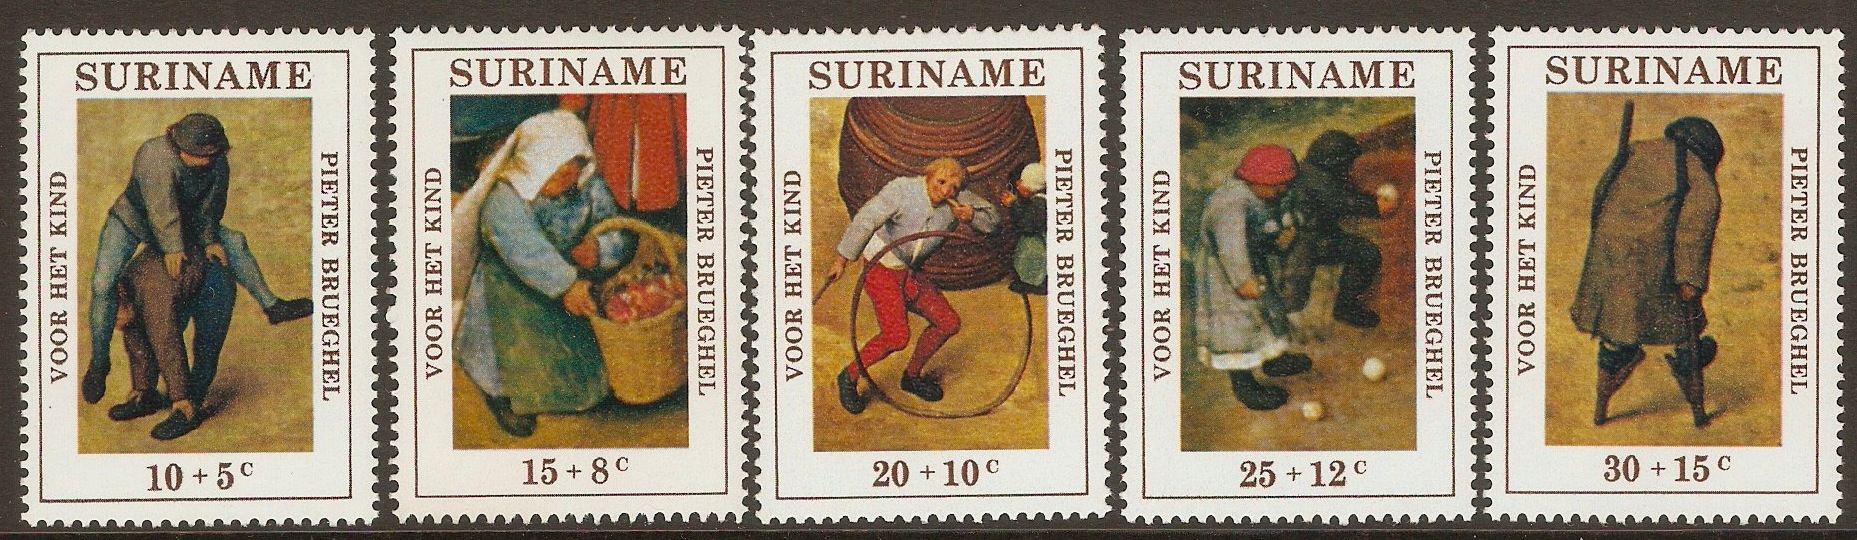 Surinam 1971 Child Welfare set. SG704-SG708.